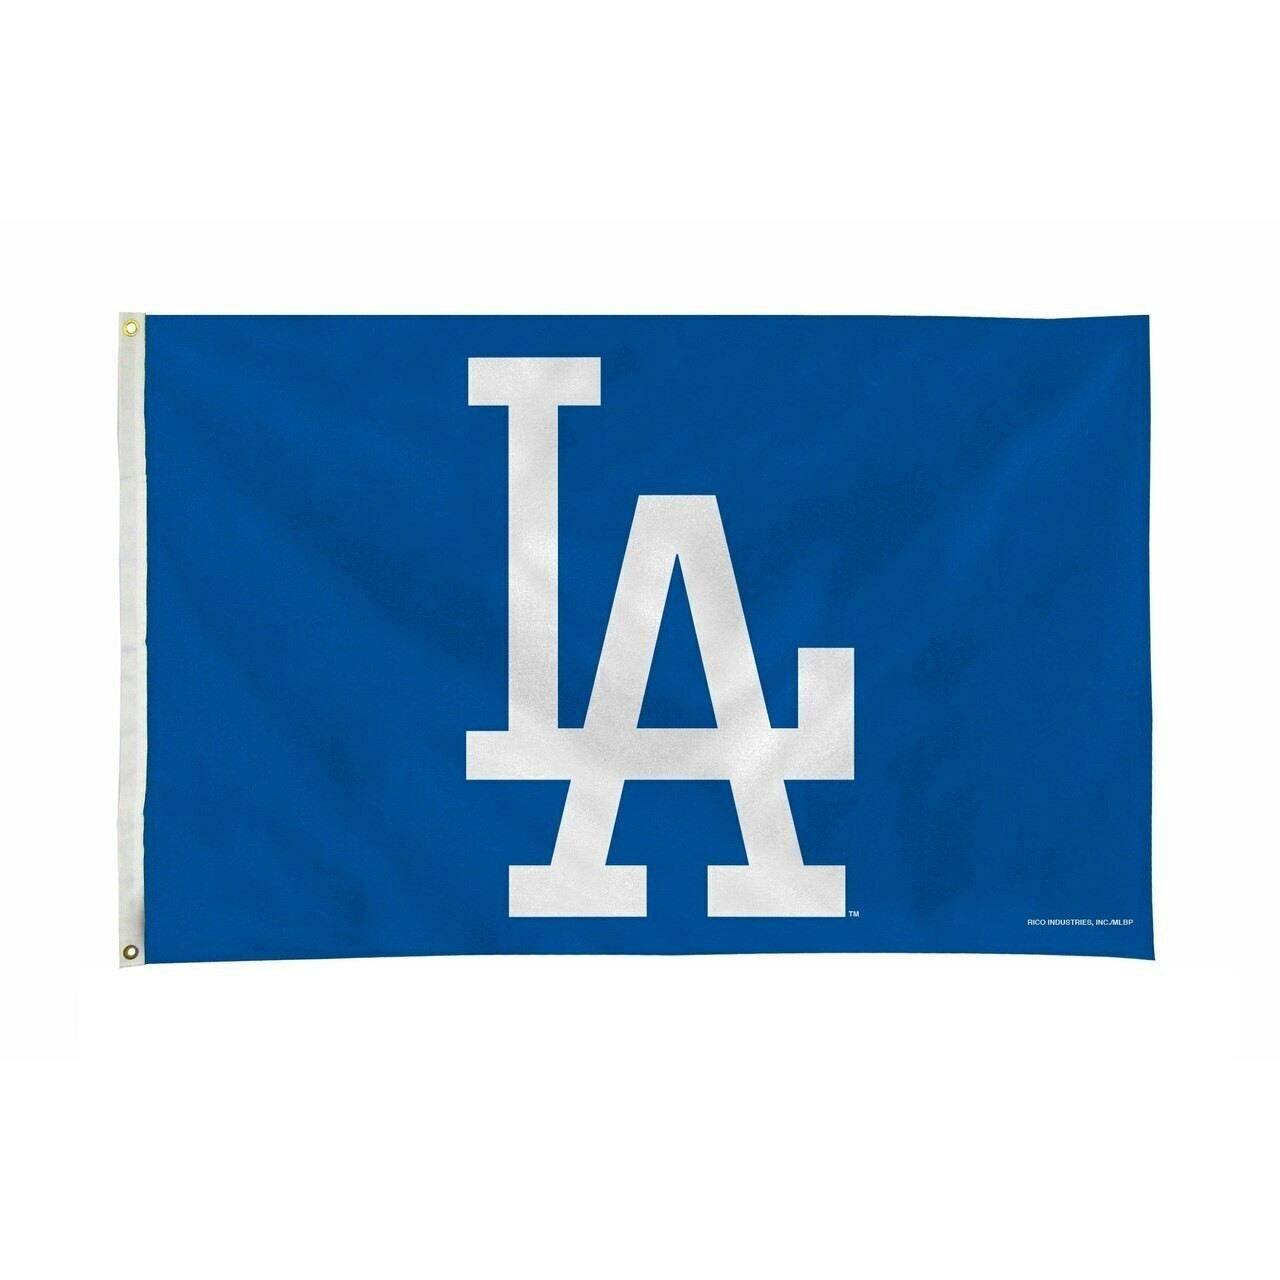 Los Angeles Dodgers - LA Dodgers logo & Dodger Stadium Background - MAGNET